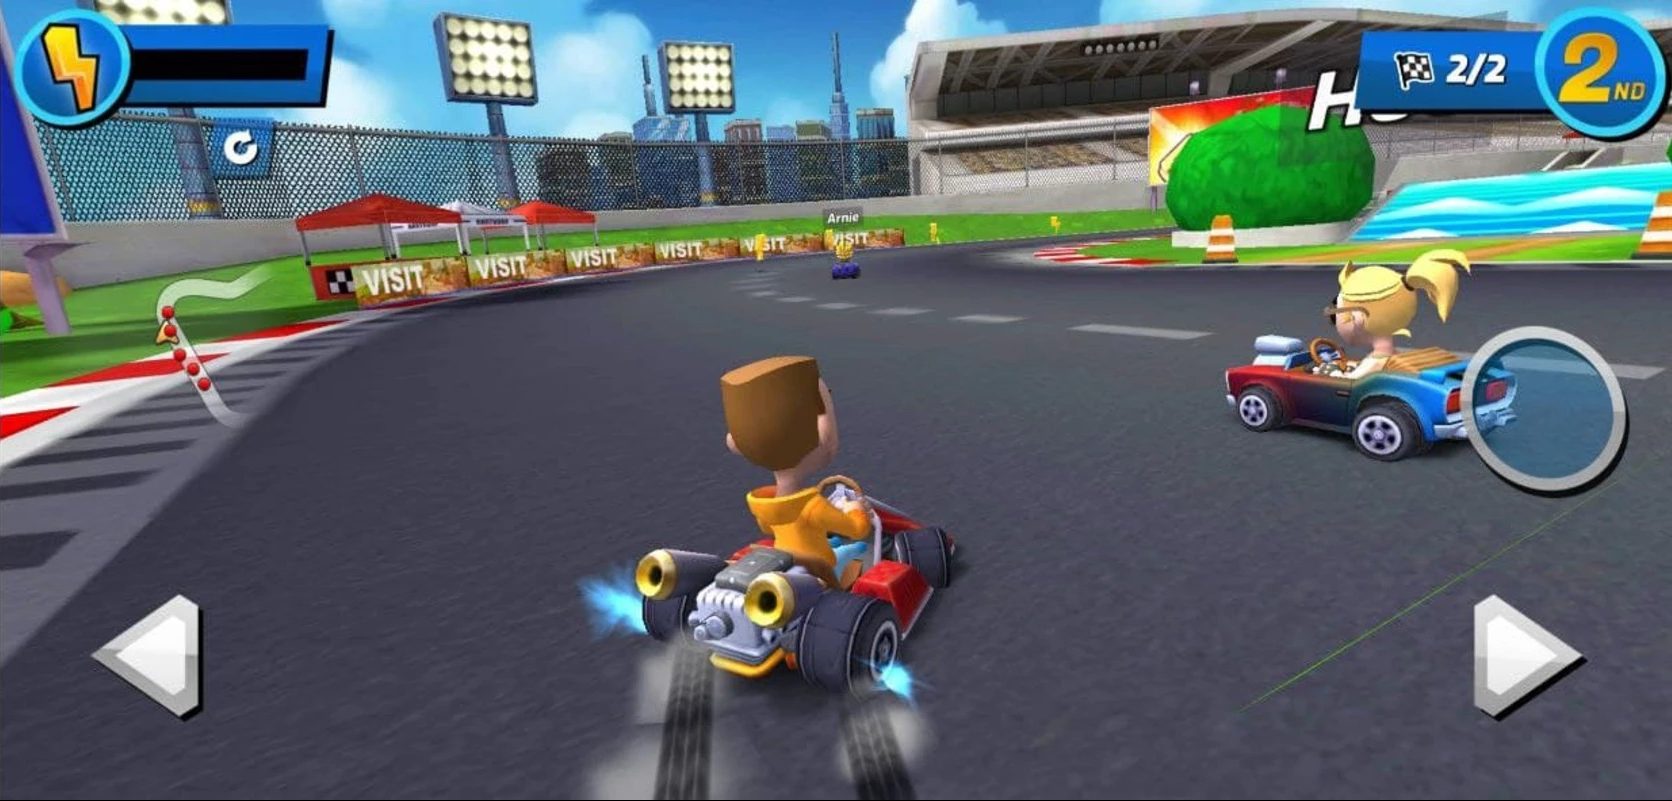 Boom Karts: boy and girl racing on karts